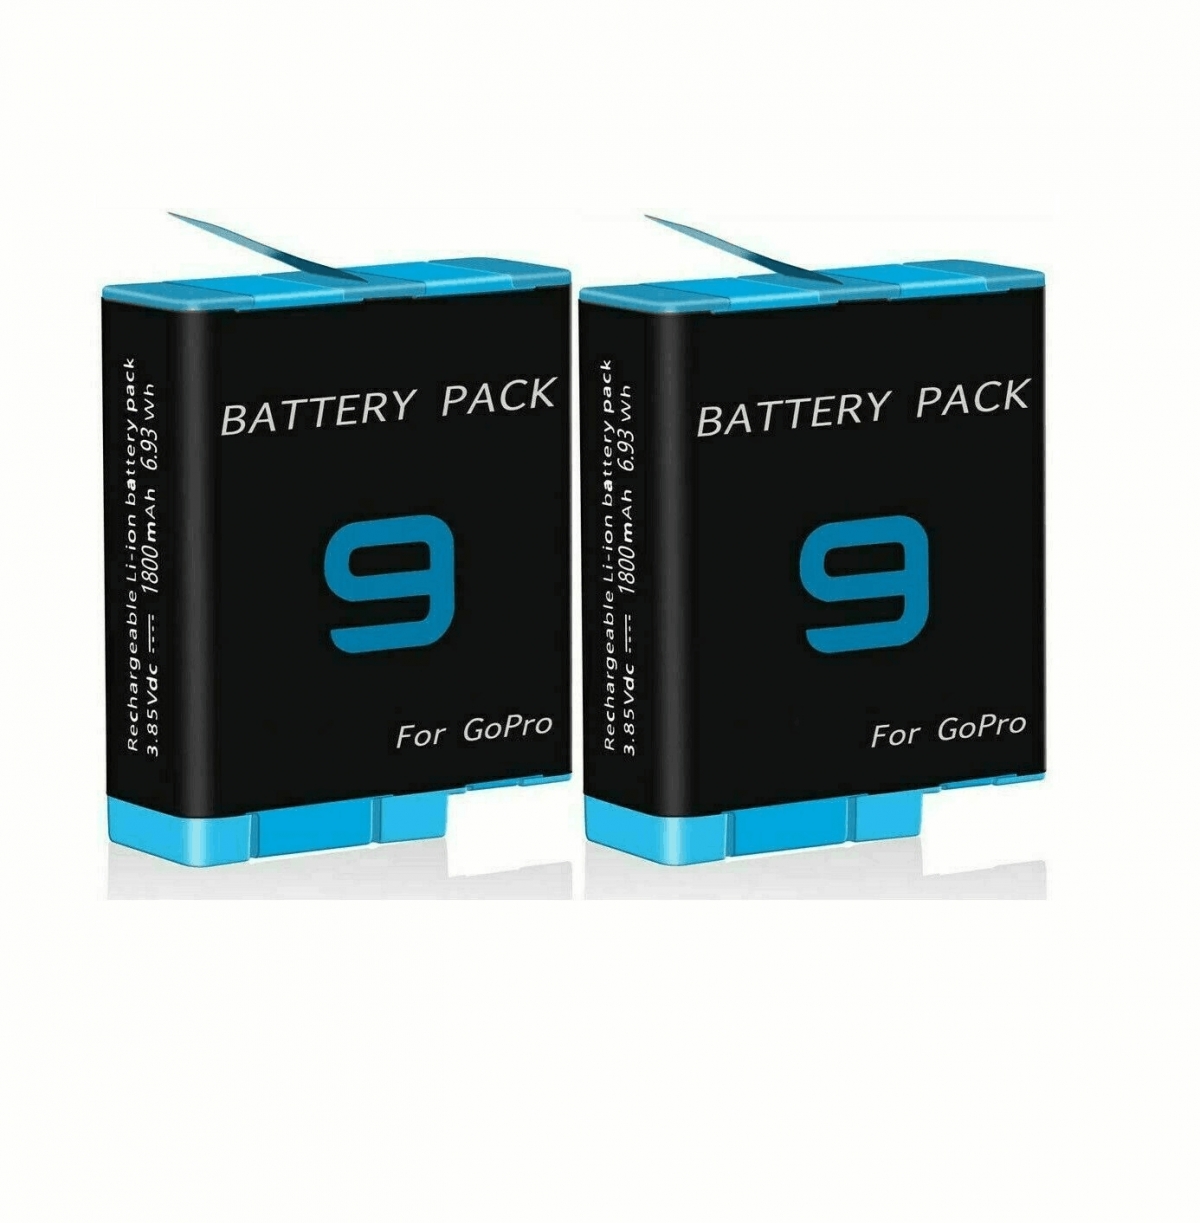 Kutia karikuese me 3 slot +2 bateri për GoPro-CPY, bateri laptopi, përshtatës laptopi, karikues laptopi, bateri Dell, bateri Apple, bateri HP